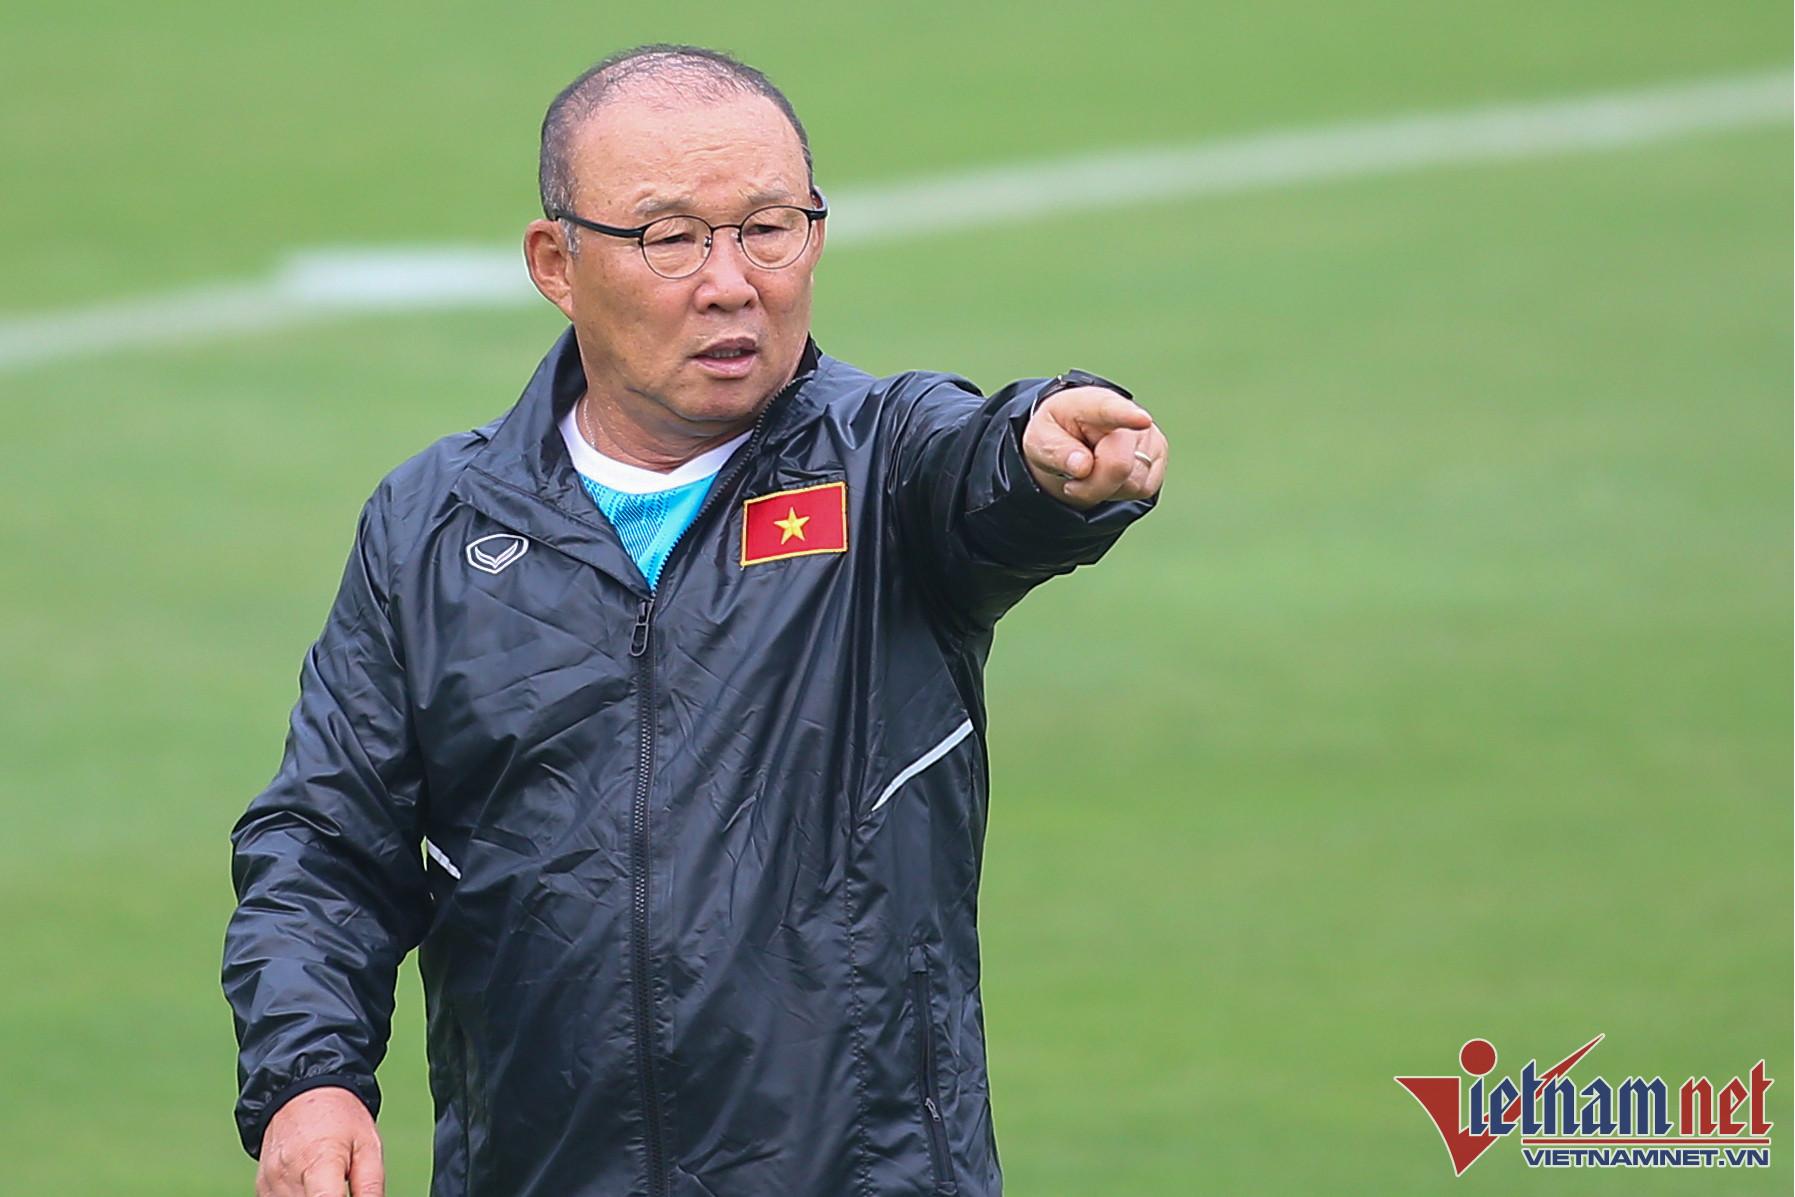 Ba lý do HLV Park Hang Seo dễ dẫn dắt tuyển Hàn Quốc đấu Thái Lan-2